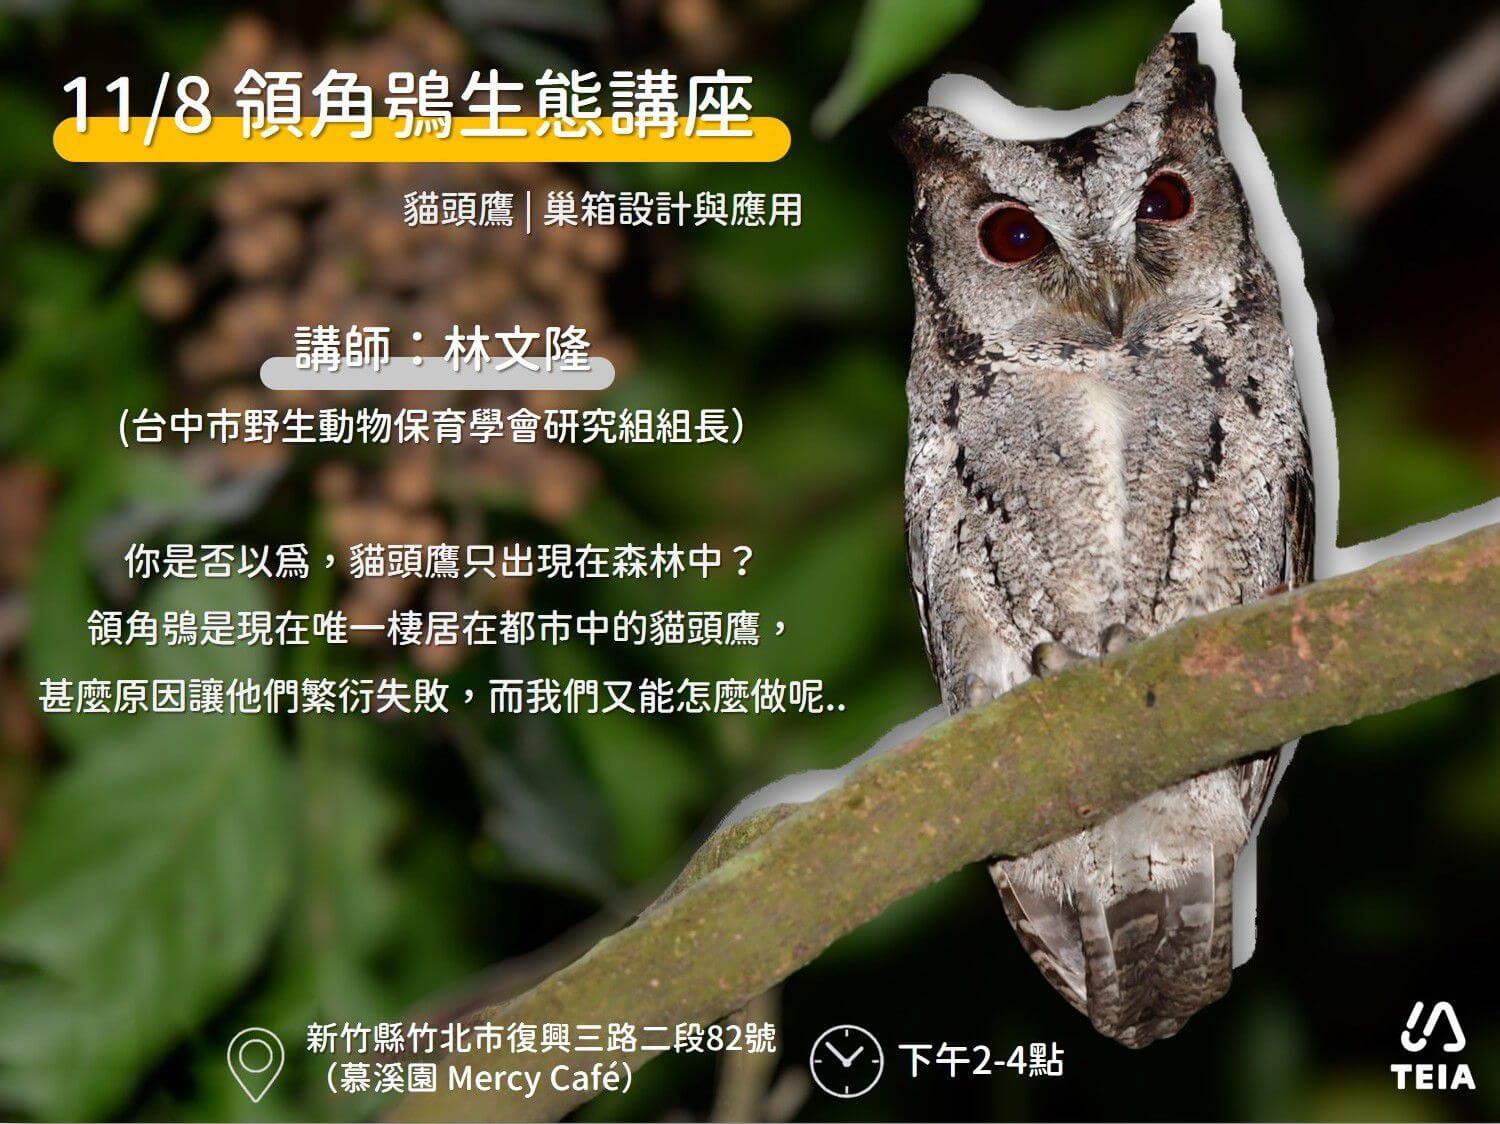 里山生態】系列講座- 台灣環境資訊協會